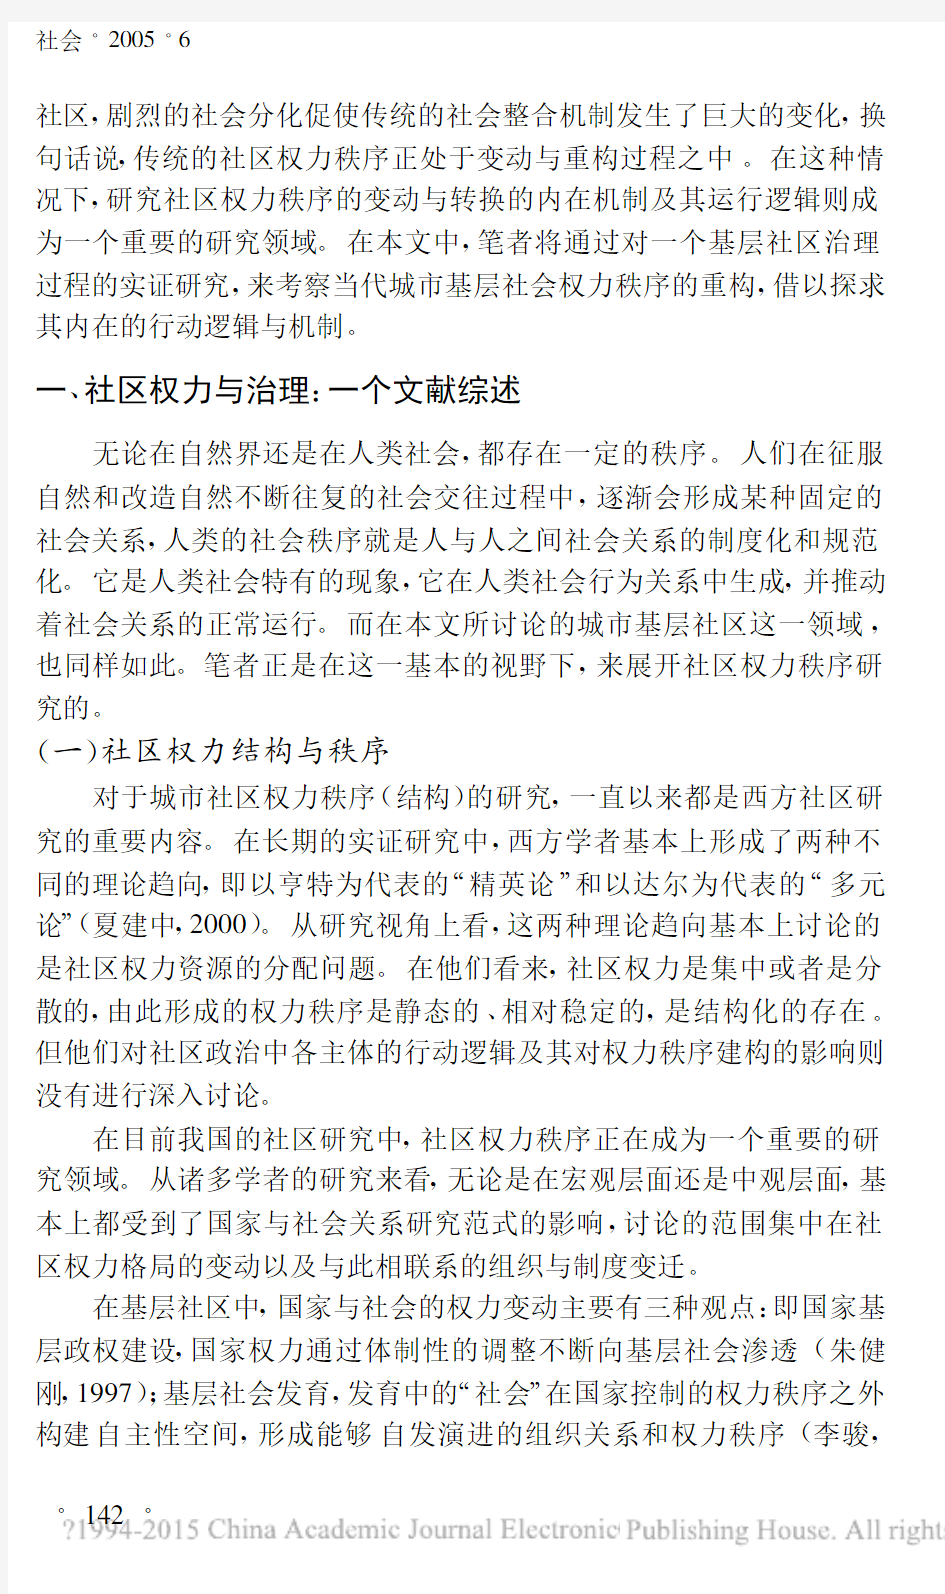 社区治理与权力秩序的重构对上海市KJ社区的研究_张虎祥